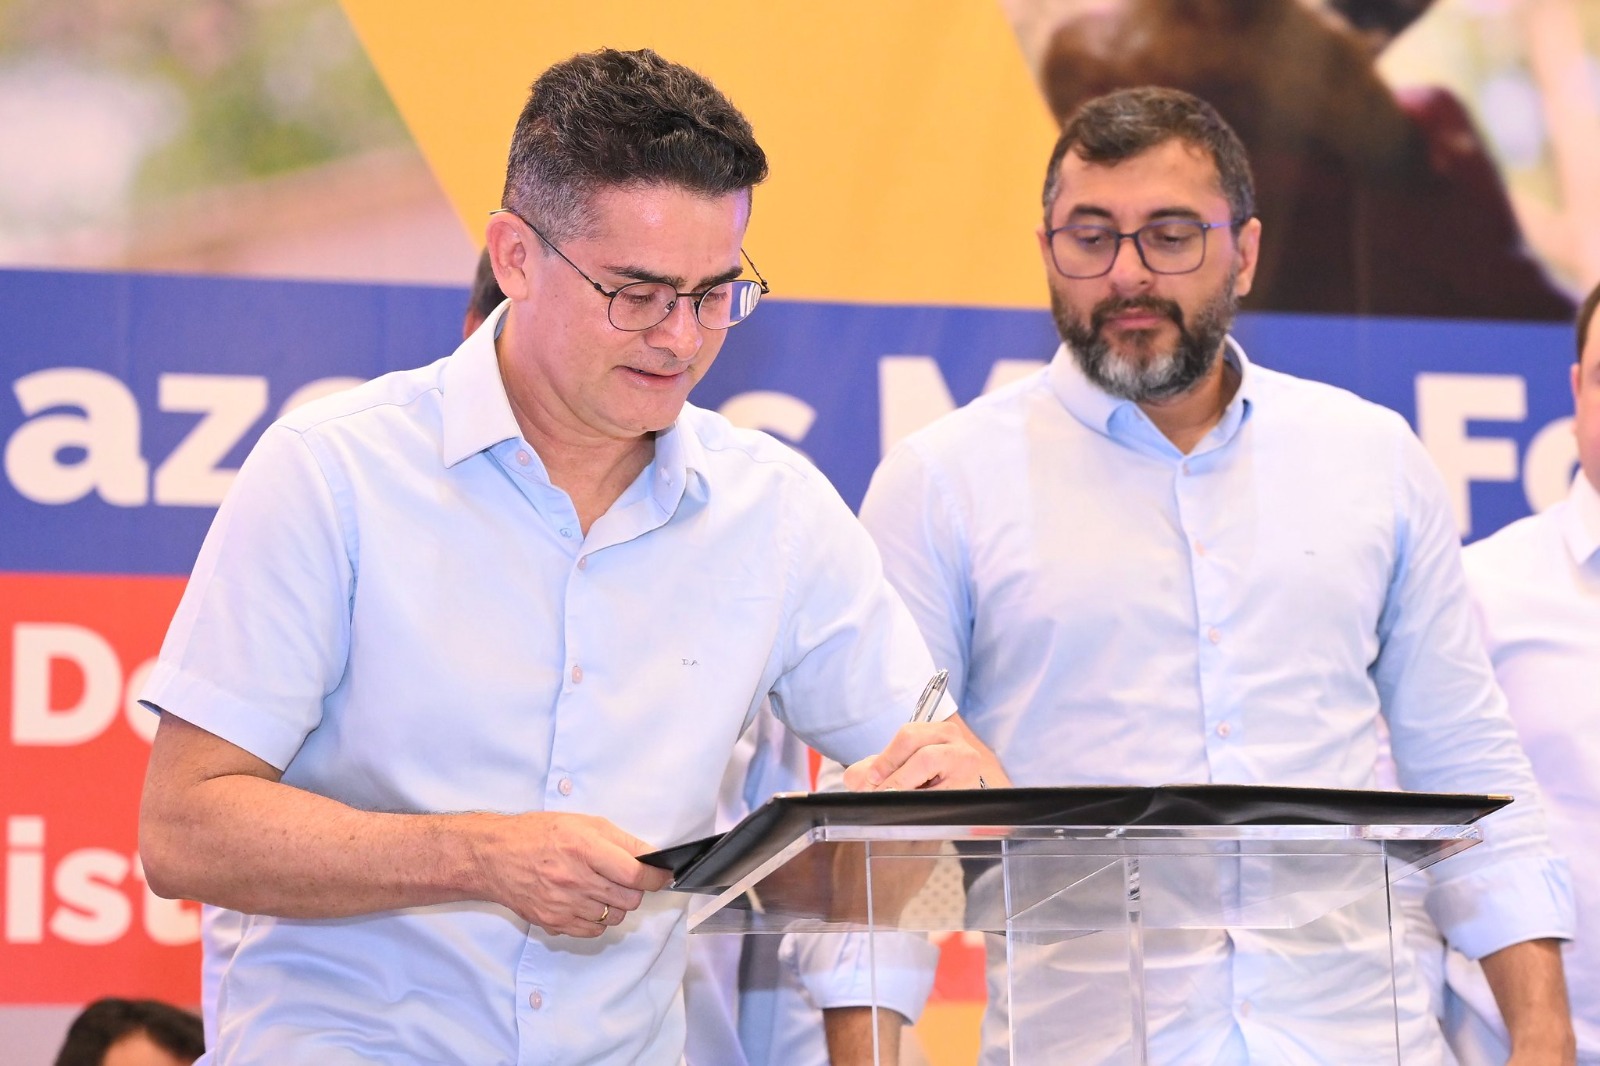 David Almeida expressa gratidão ao governo Lula, pela assistência social ao aderir ao plano Brasil sem Fome.